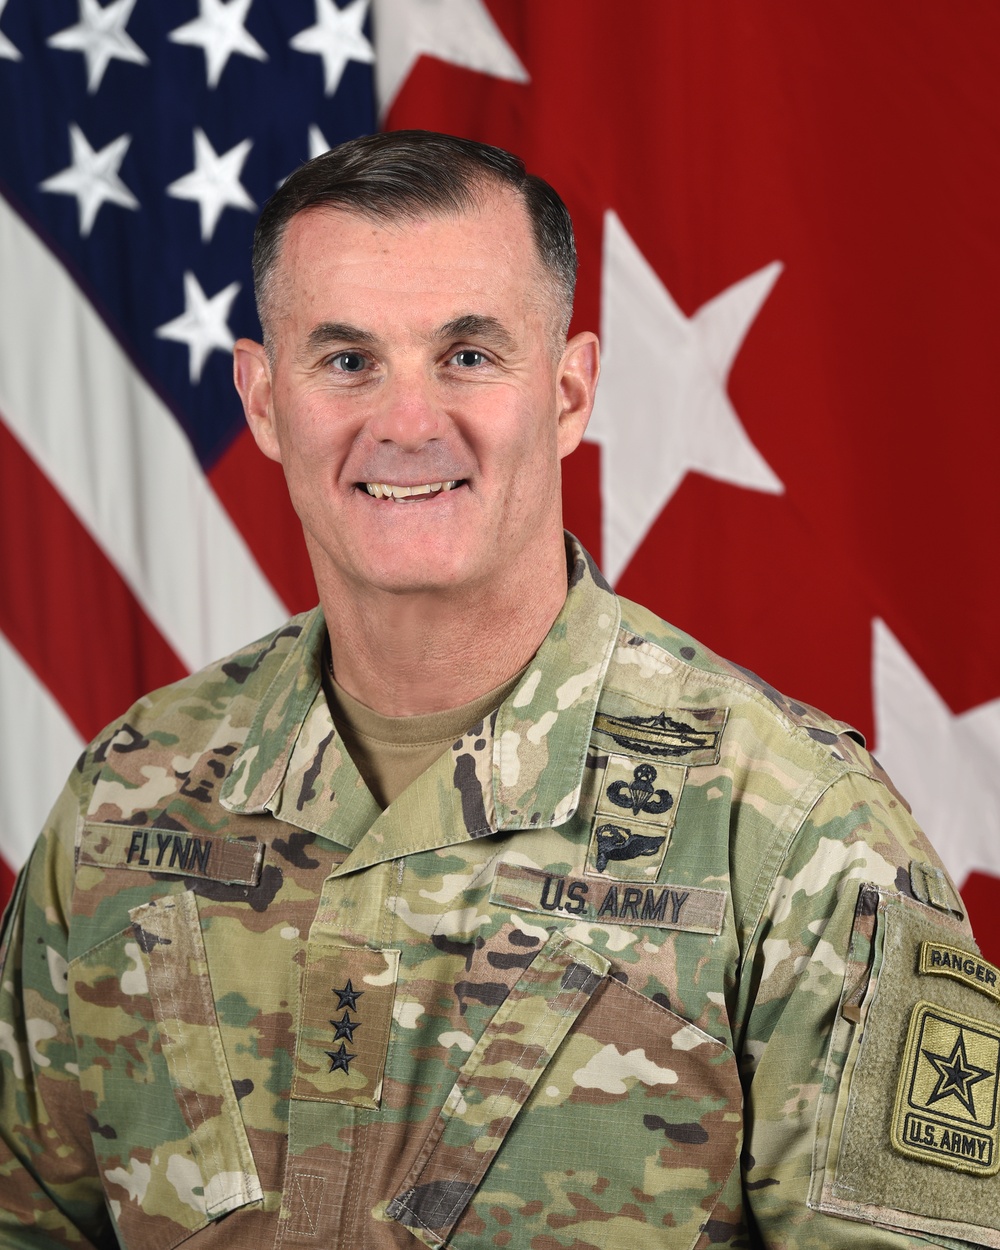 U.S. Army Lt. Gen. Charles A. Flynn